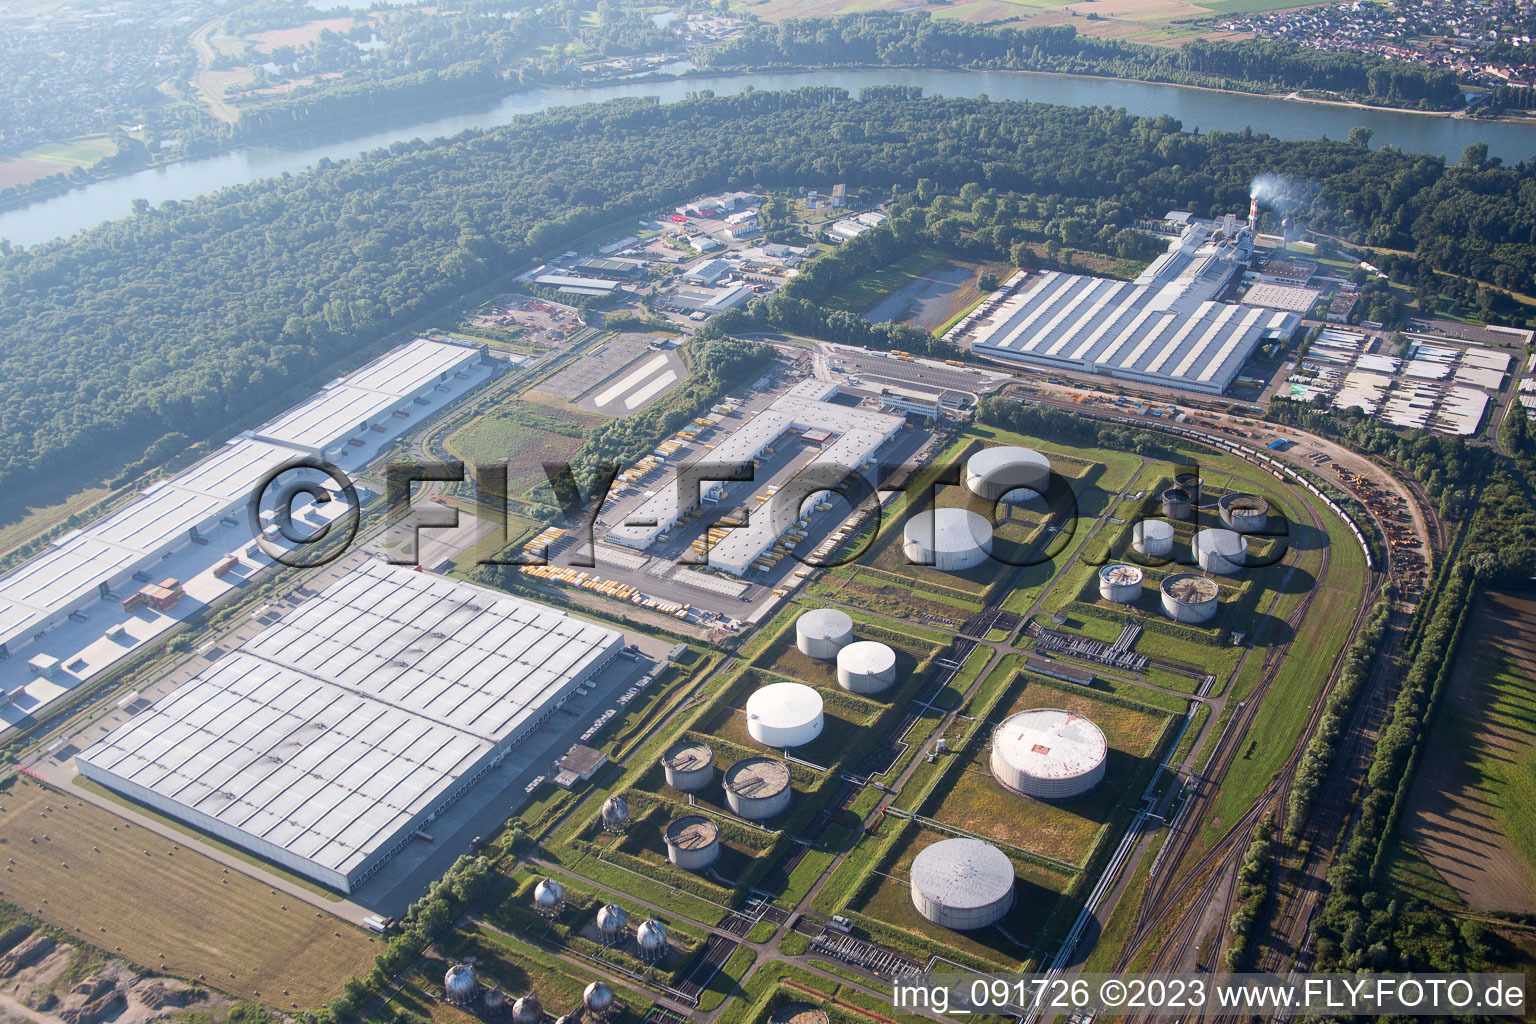 Vue aérienne de Zone industrielle à l'aéroport, centre logistique DHL à Speyer dans le département Rhénanie-Palatinat, Allemagne